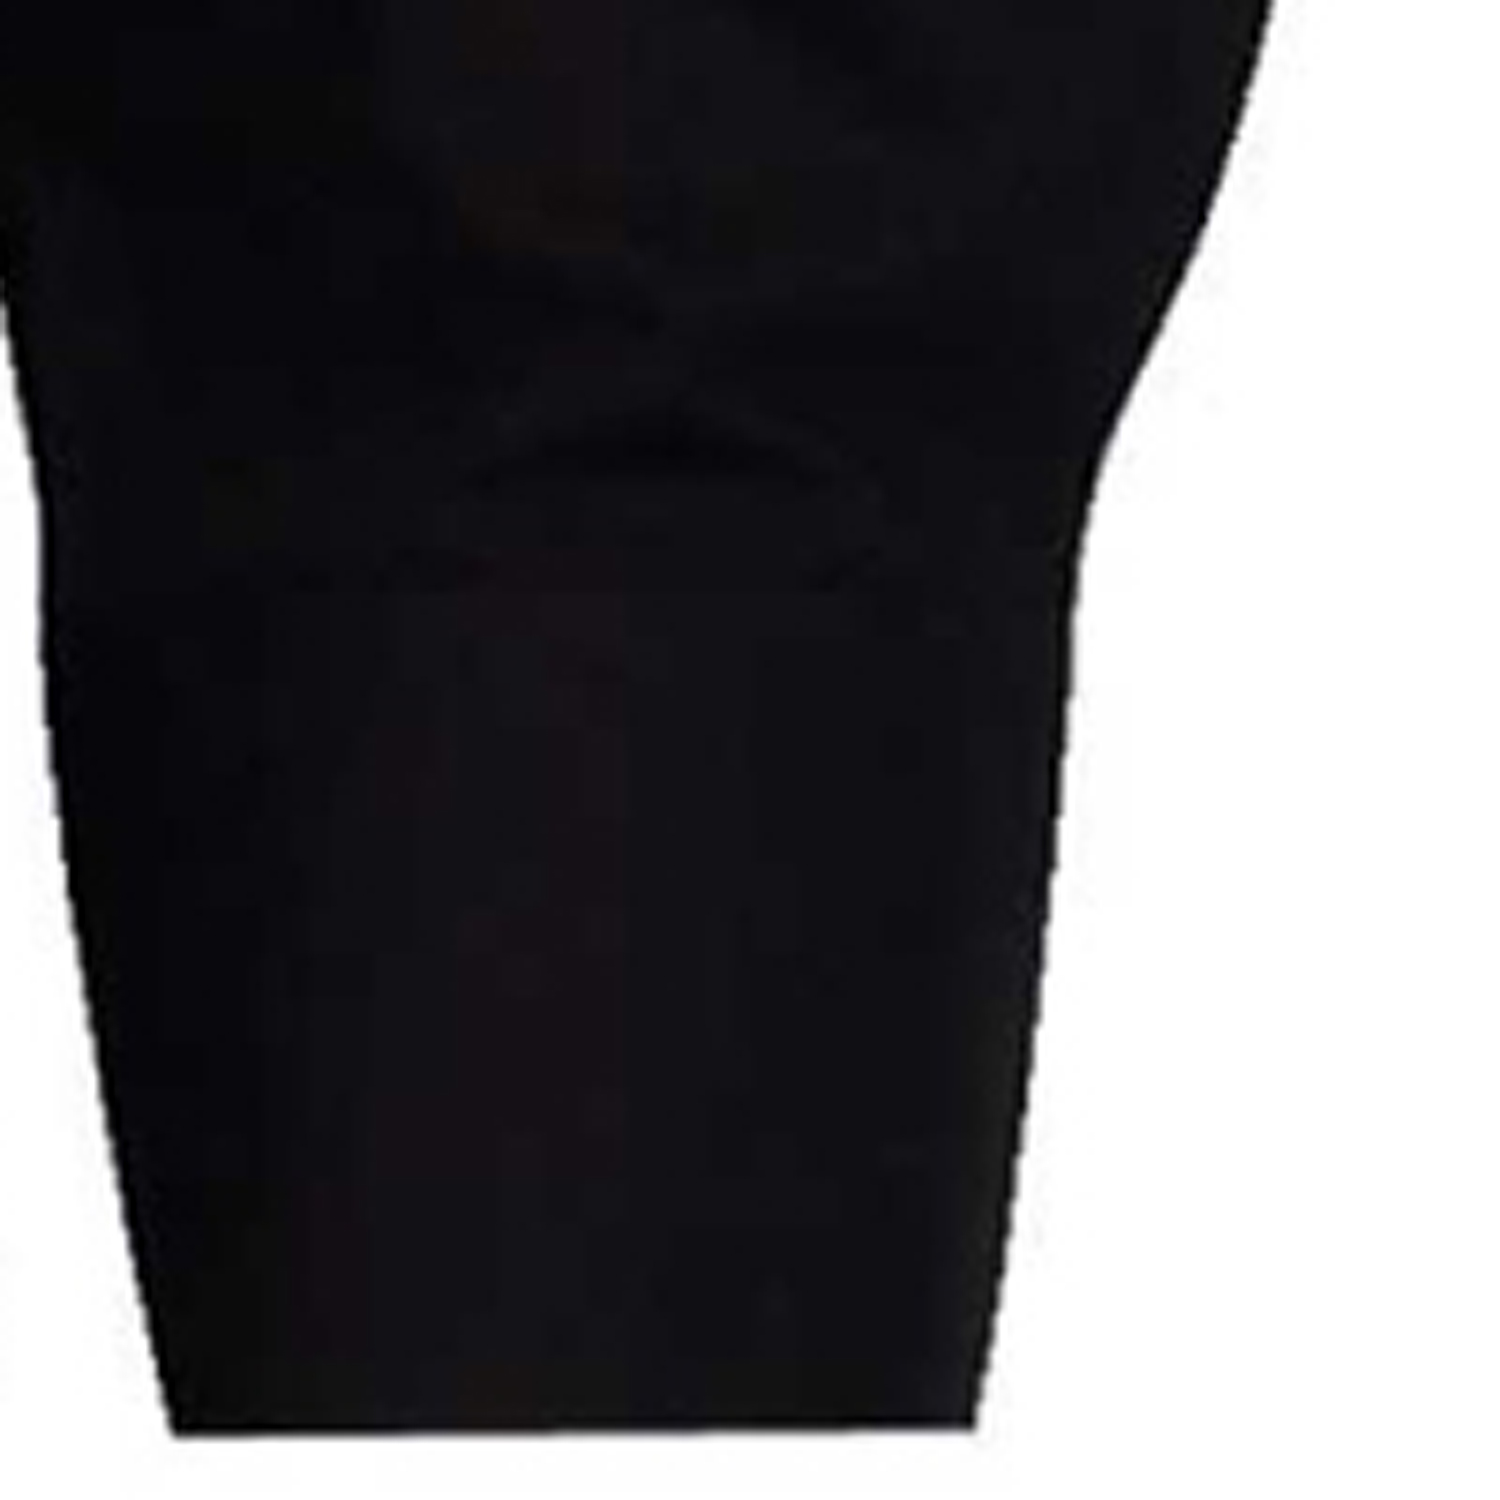 Langarm-Hemd in schwarz von Arrivee in großen Größen bis 8XL